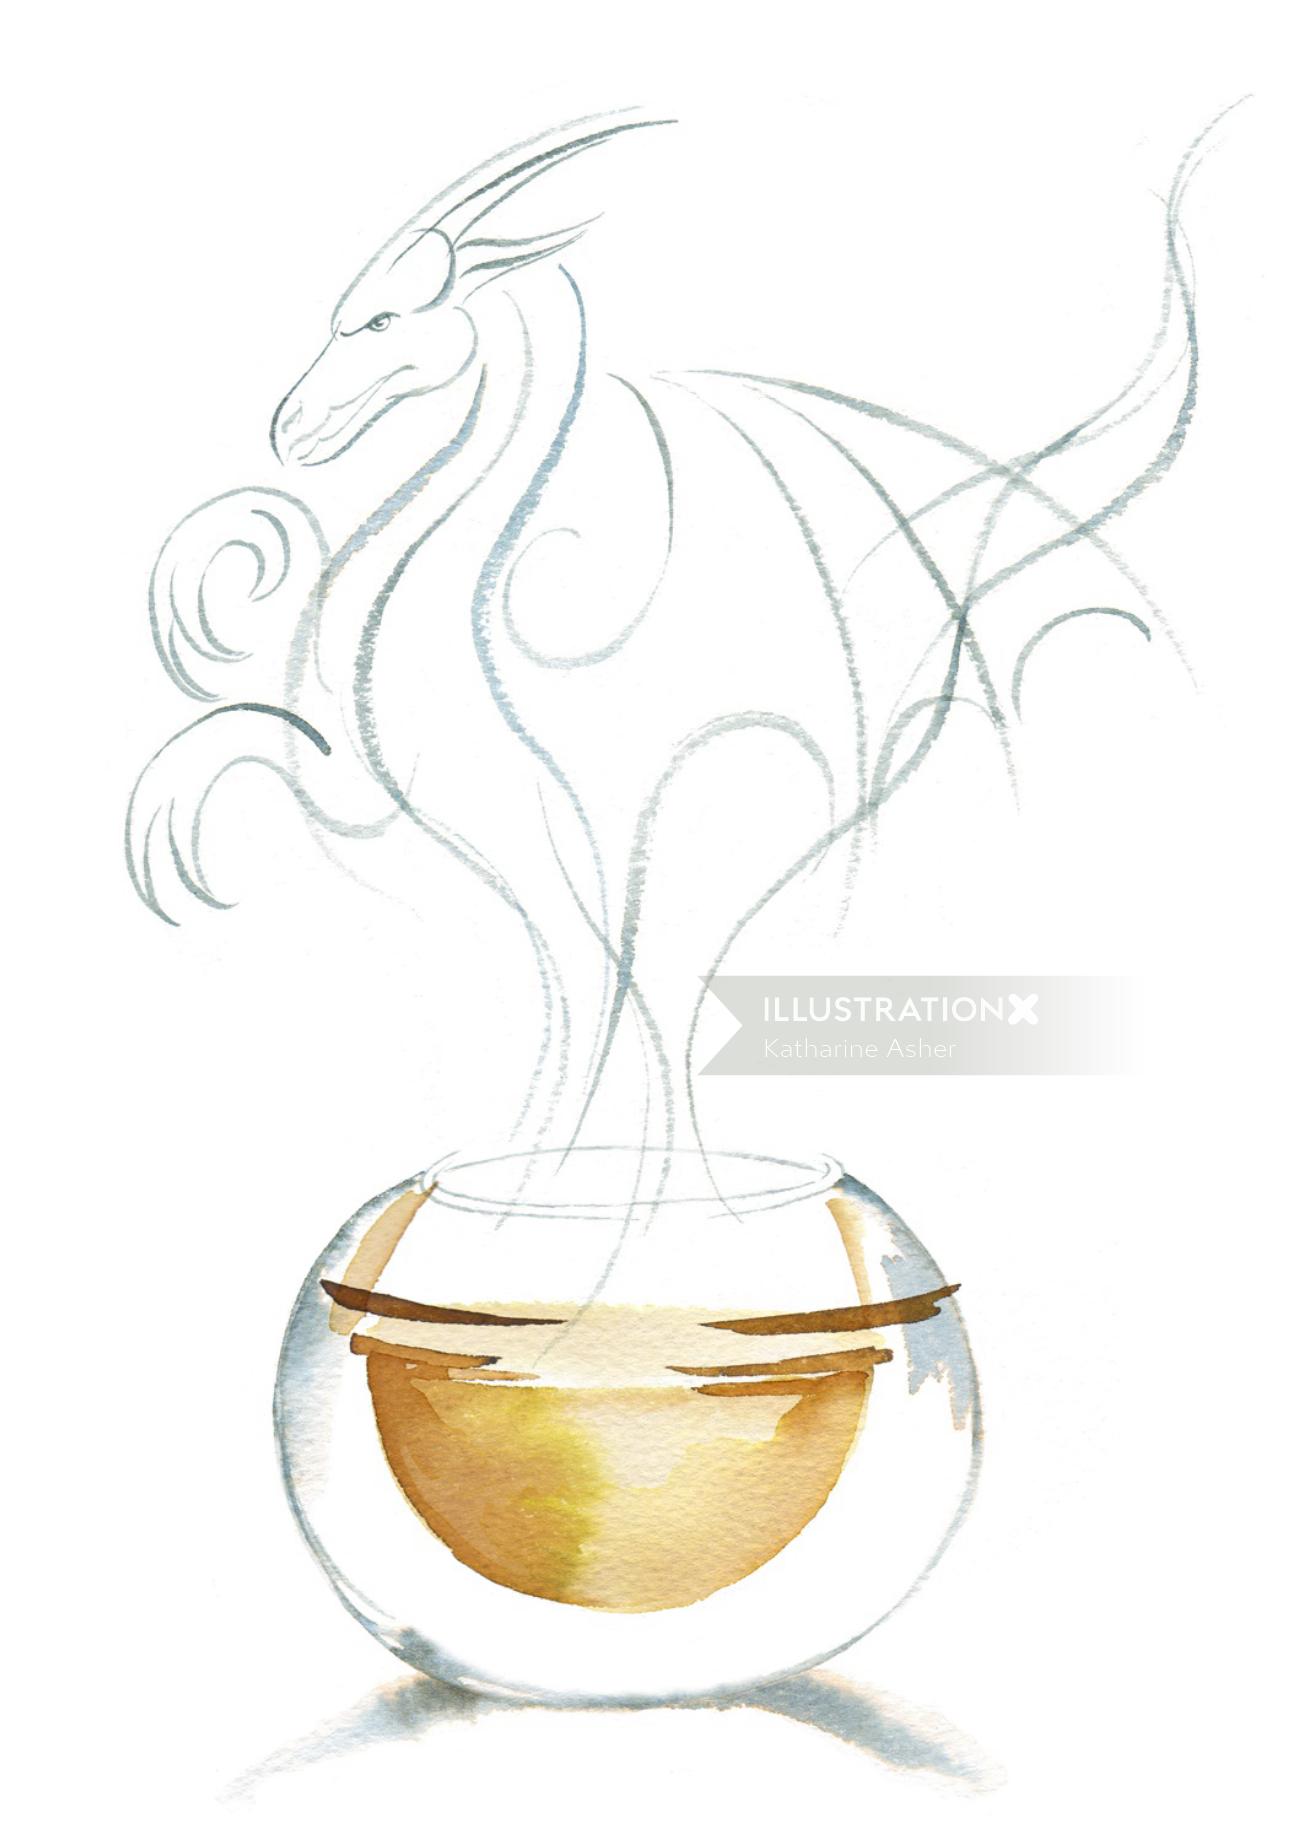 Illustration aquarelle de Pekoe China Teas drink